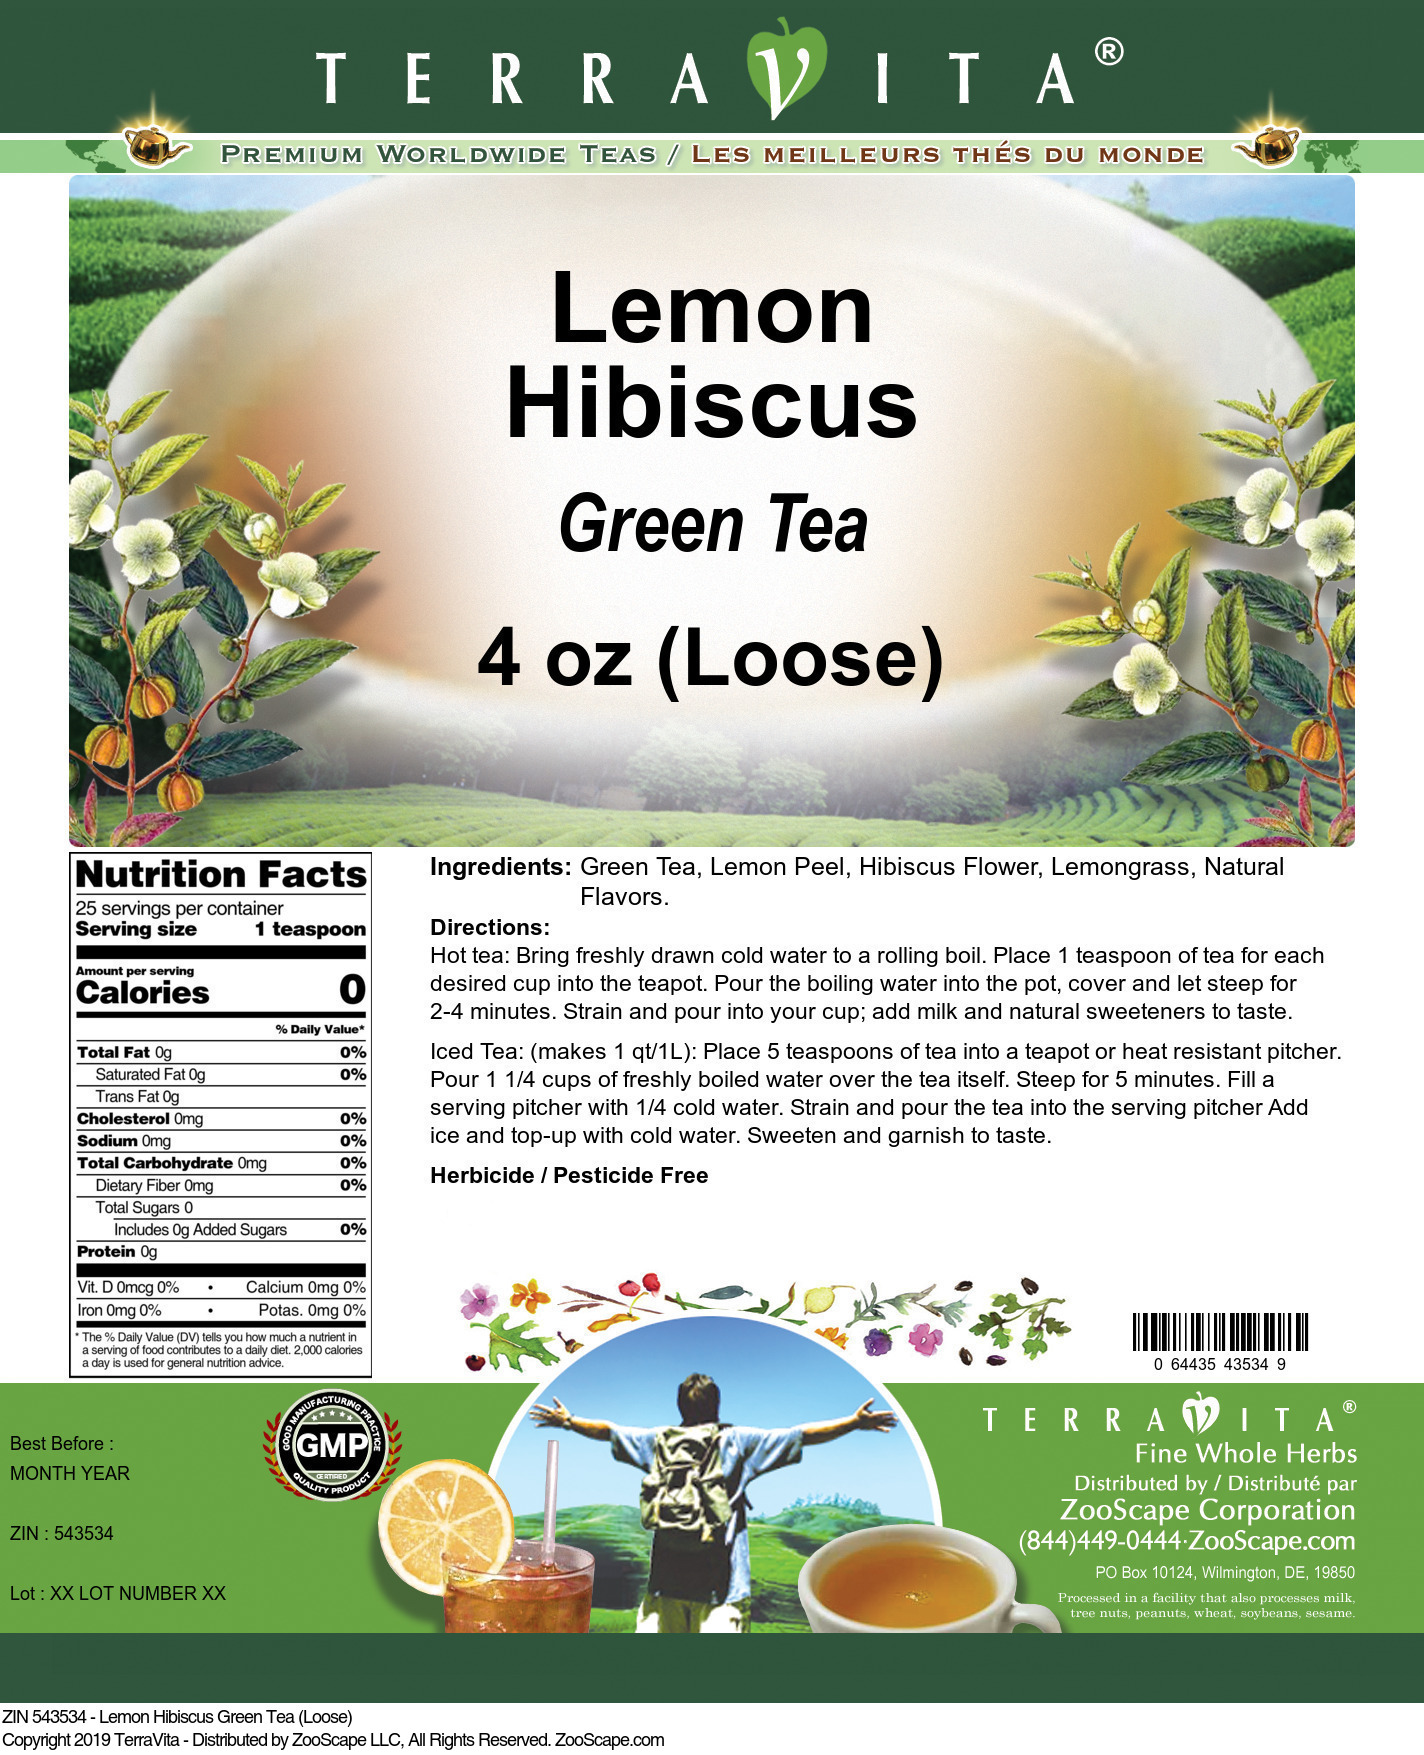 Lemon Hibiscus Green Tea (Loose) - Label